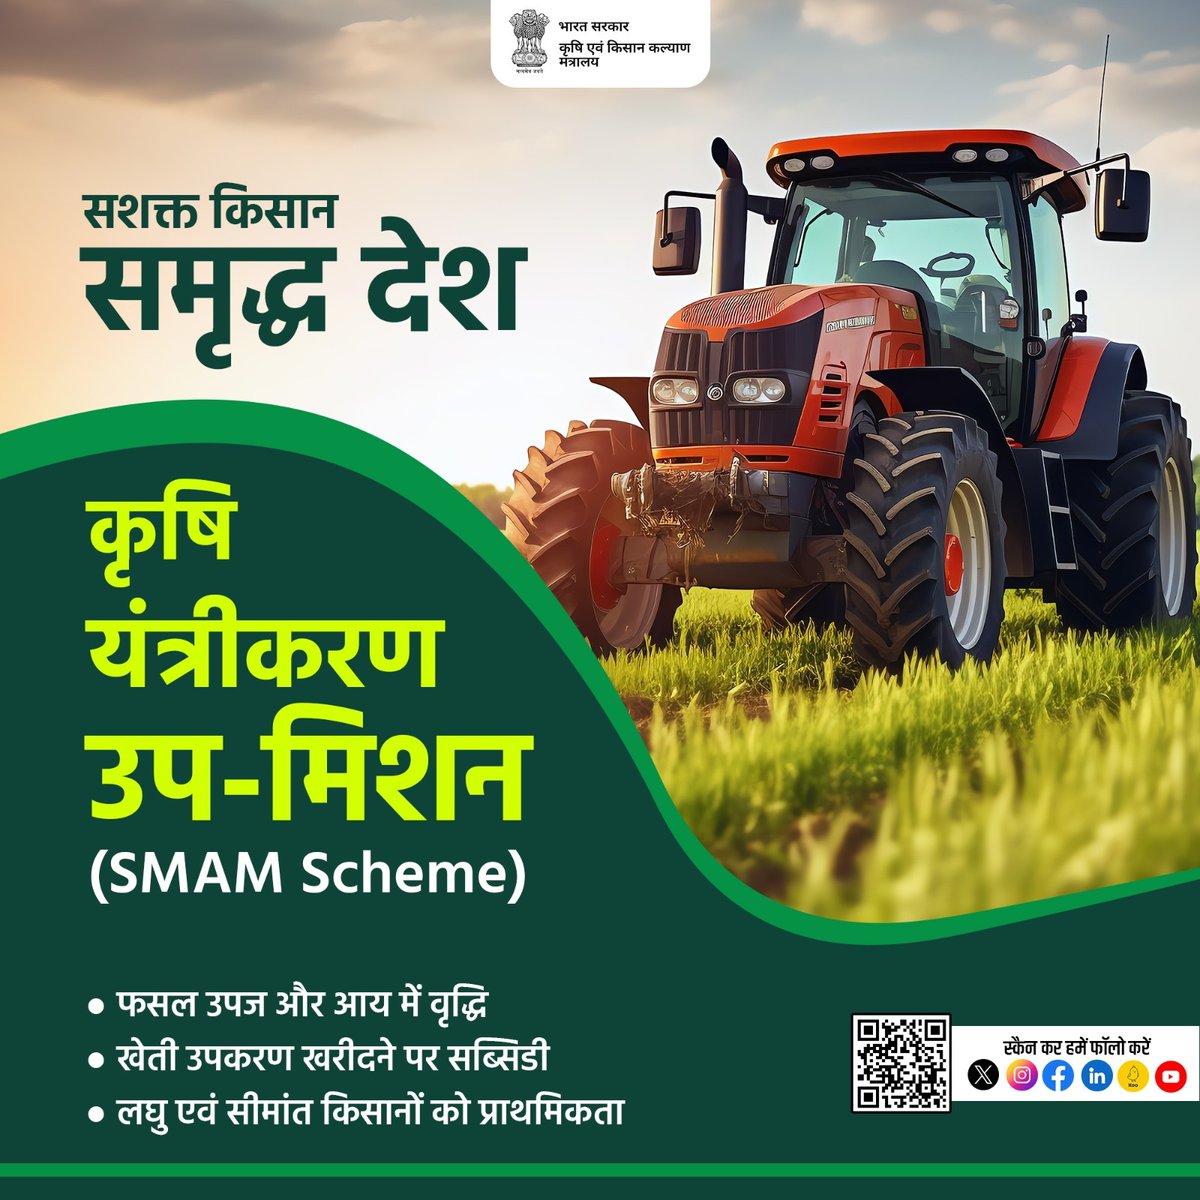 कृषि यंत्रीकरण उप-मिशन का उद्देश्य कृषि कार्यों जैसे जुताई, बुवाई, रोपाई, सिंचाई, कटाई आदि के लिए कृषि मशीनरी एवं उपकरणों के उपयोग को बढ़ावा देना है। इसके माध्यम से किसानों को नवीन और आधुनिक कृषि उपकरणों के बारे में जानकारी भी प्रदान की जाती है।
#agriculture #farmmachinery #SMAM